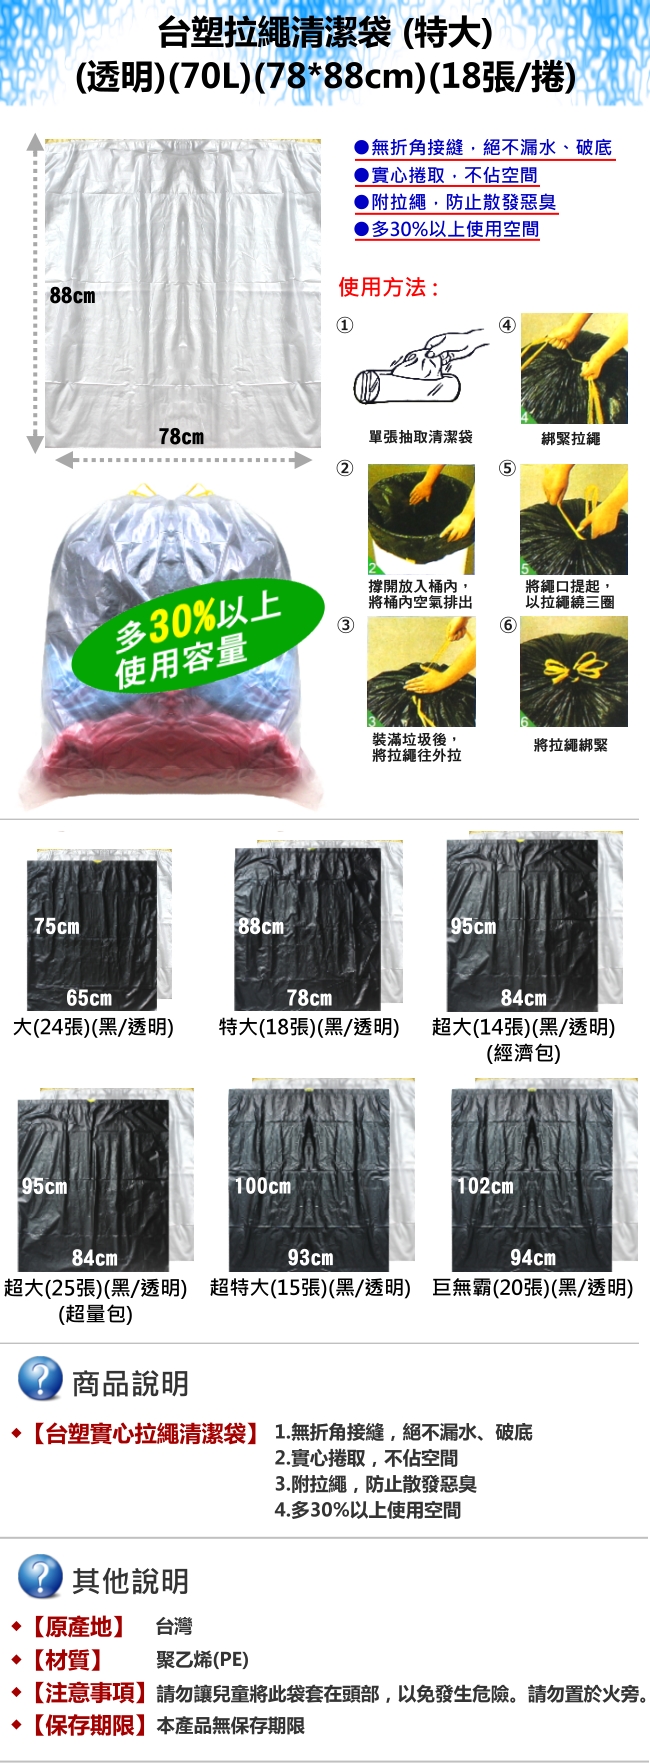 台塑 拉繩 清潔袋 垃圾袋 (特大) (透明) (70L) (78*88cm) (15捲)